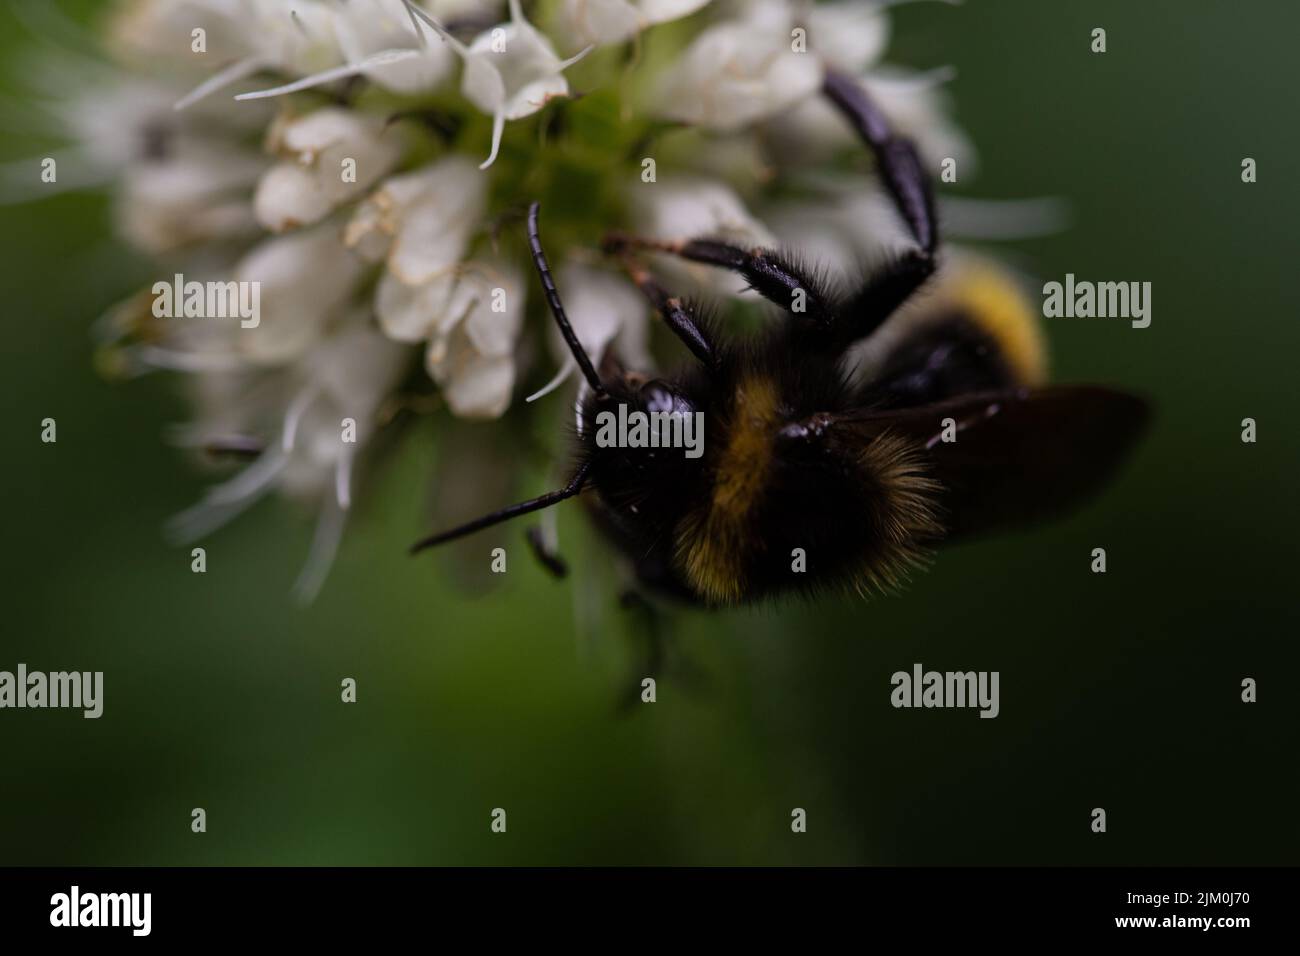 Eine Makroaufnahme einer Hummel auf einer Blume vor verschwommenem grünem Hintergrund Stockfoto